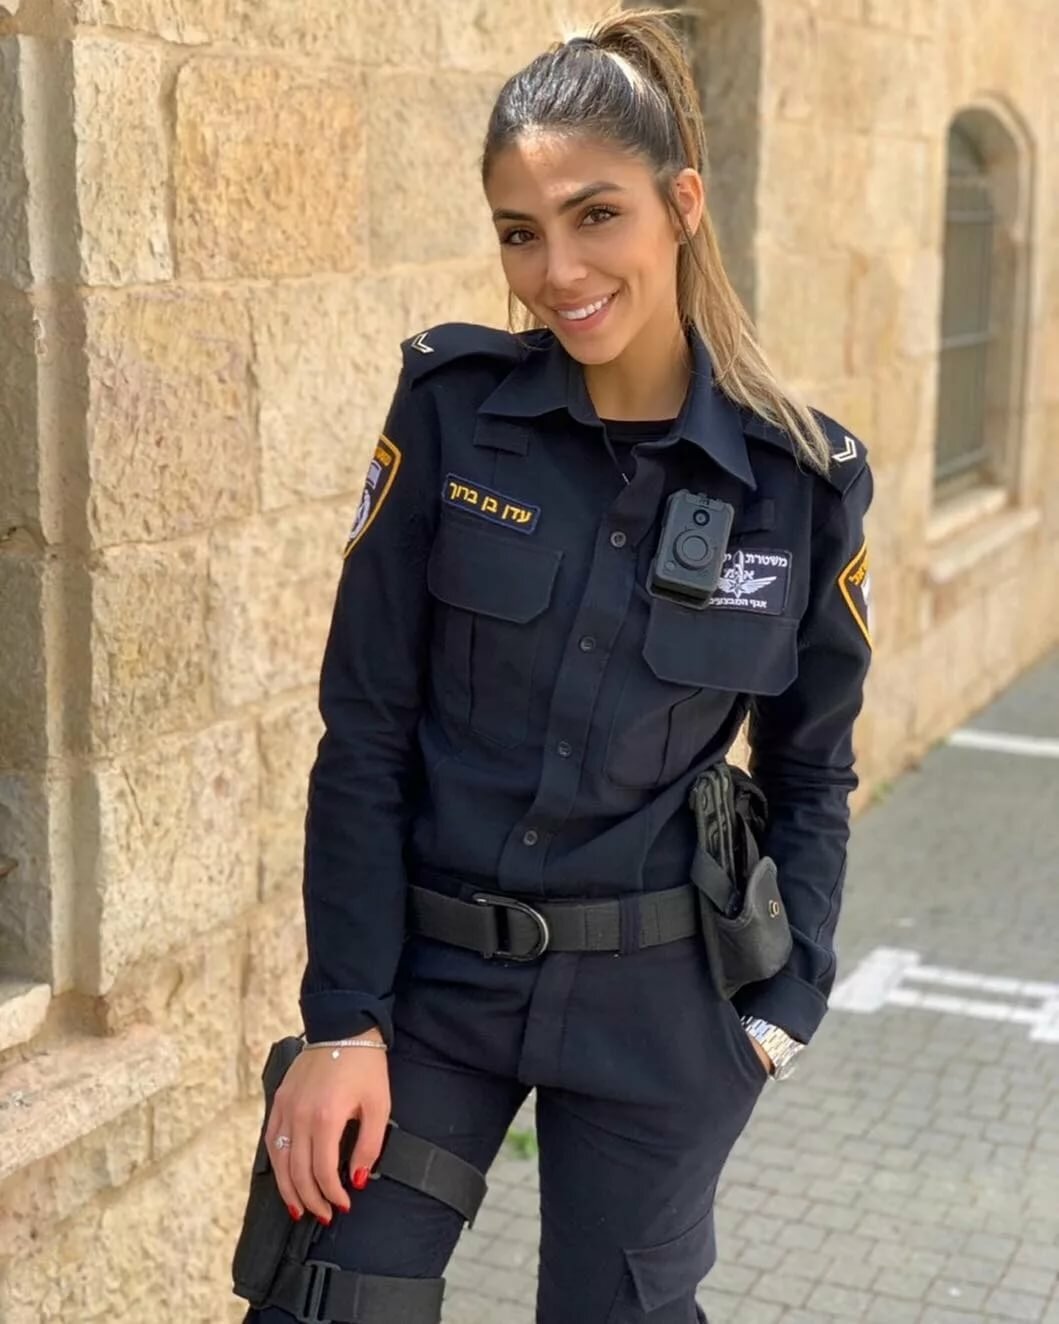 Фото девушки полицейской в зимней форме